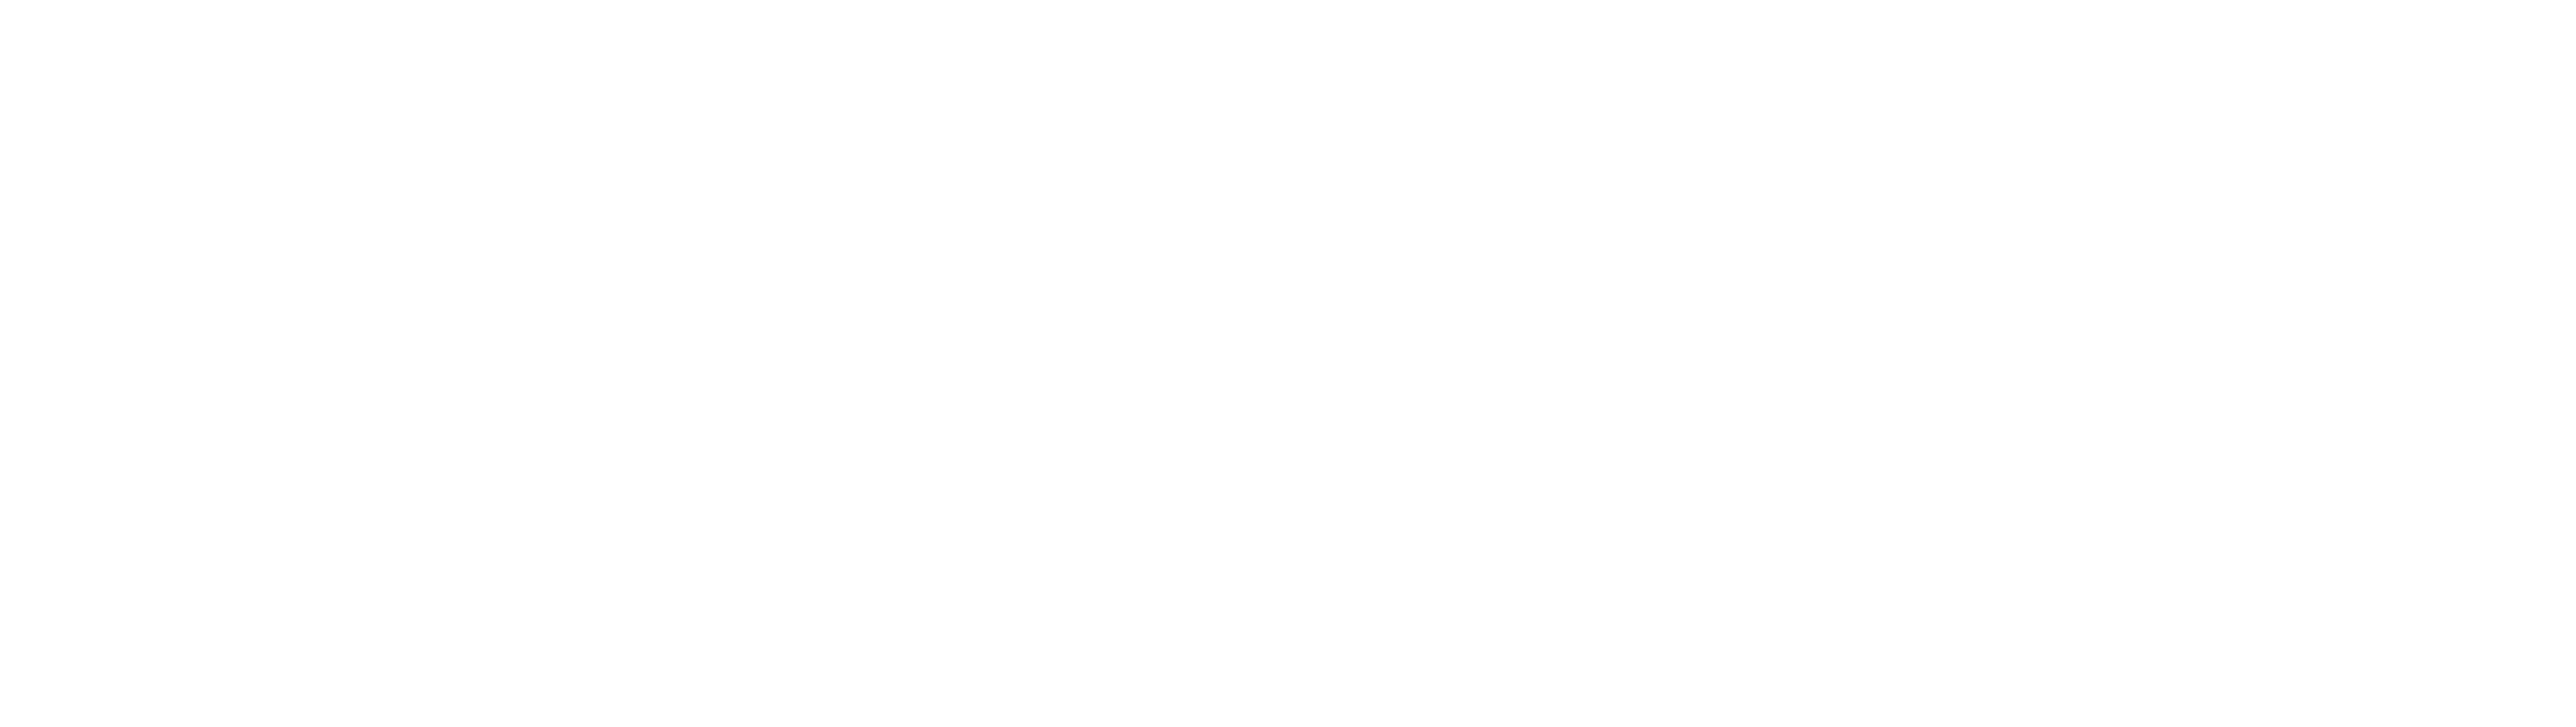 Kats Construction & Remodel